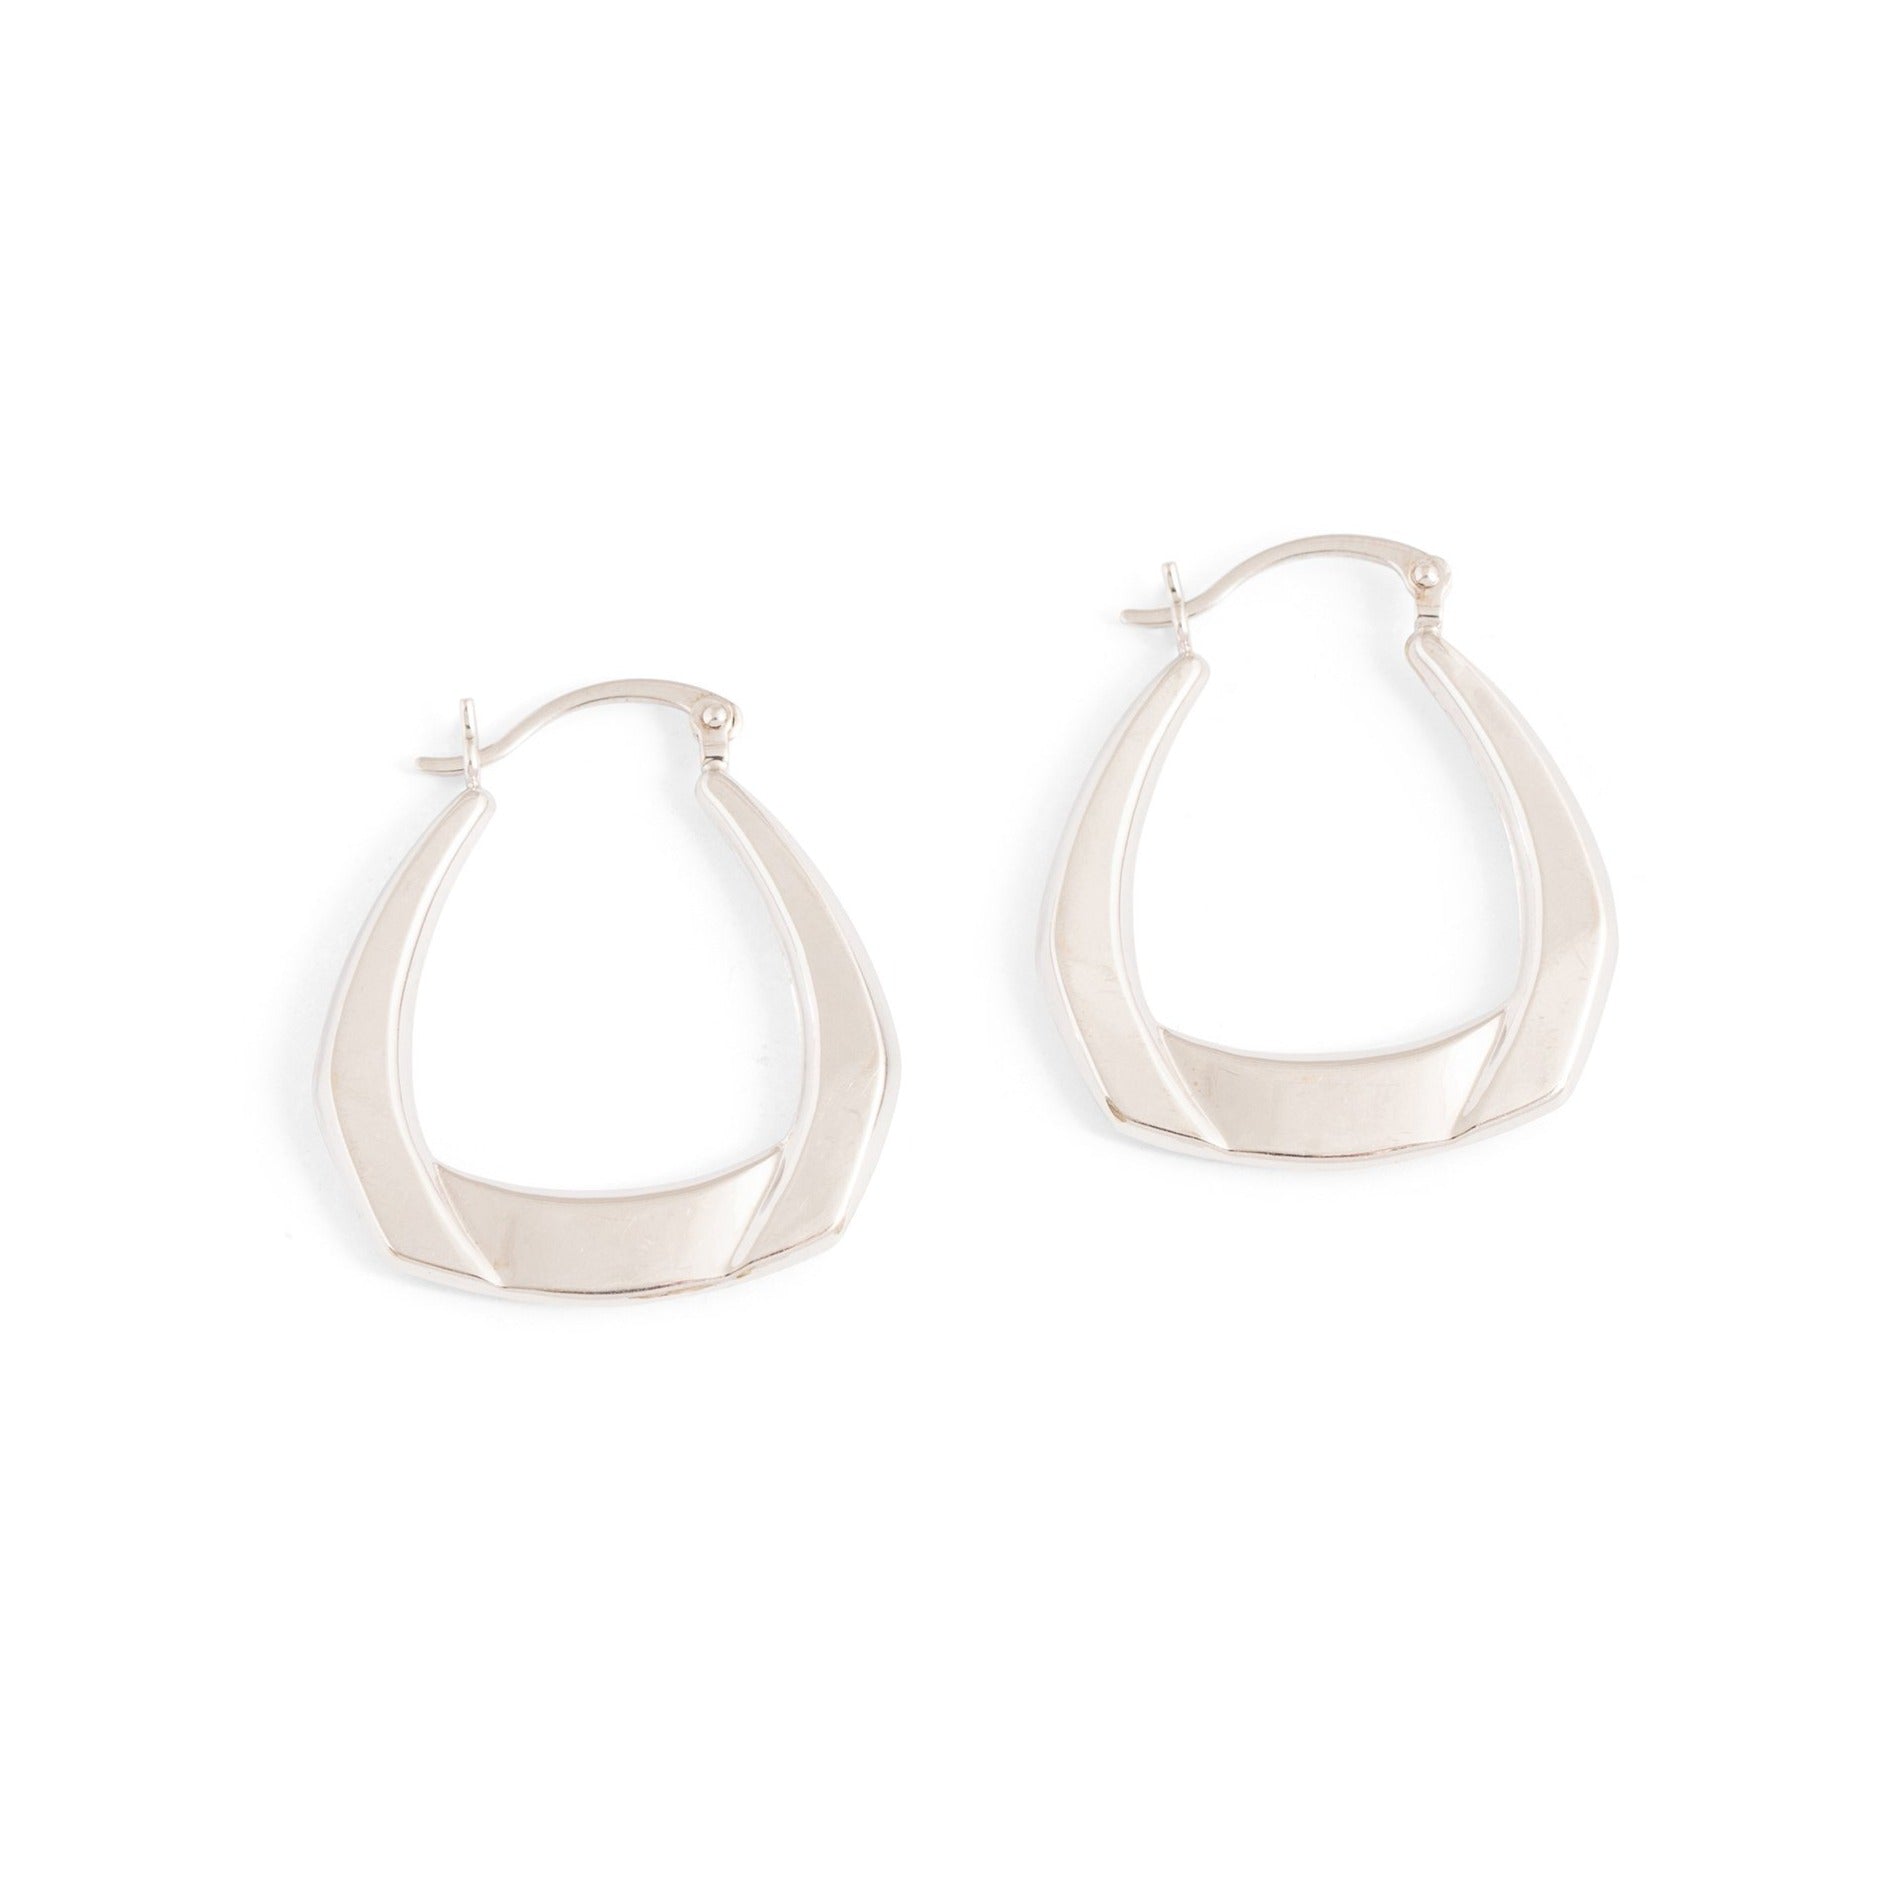 Modernist 14k White Gold Hoop Earrings